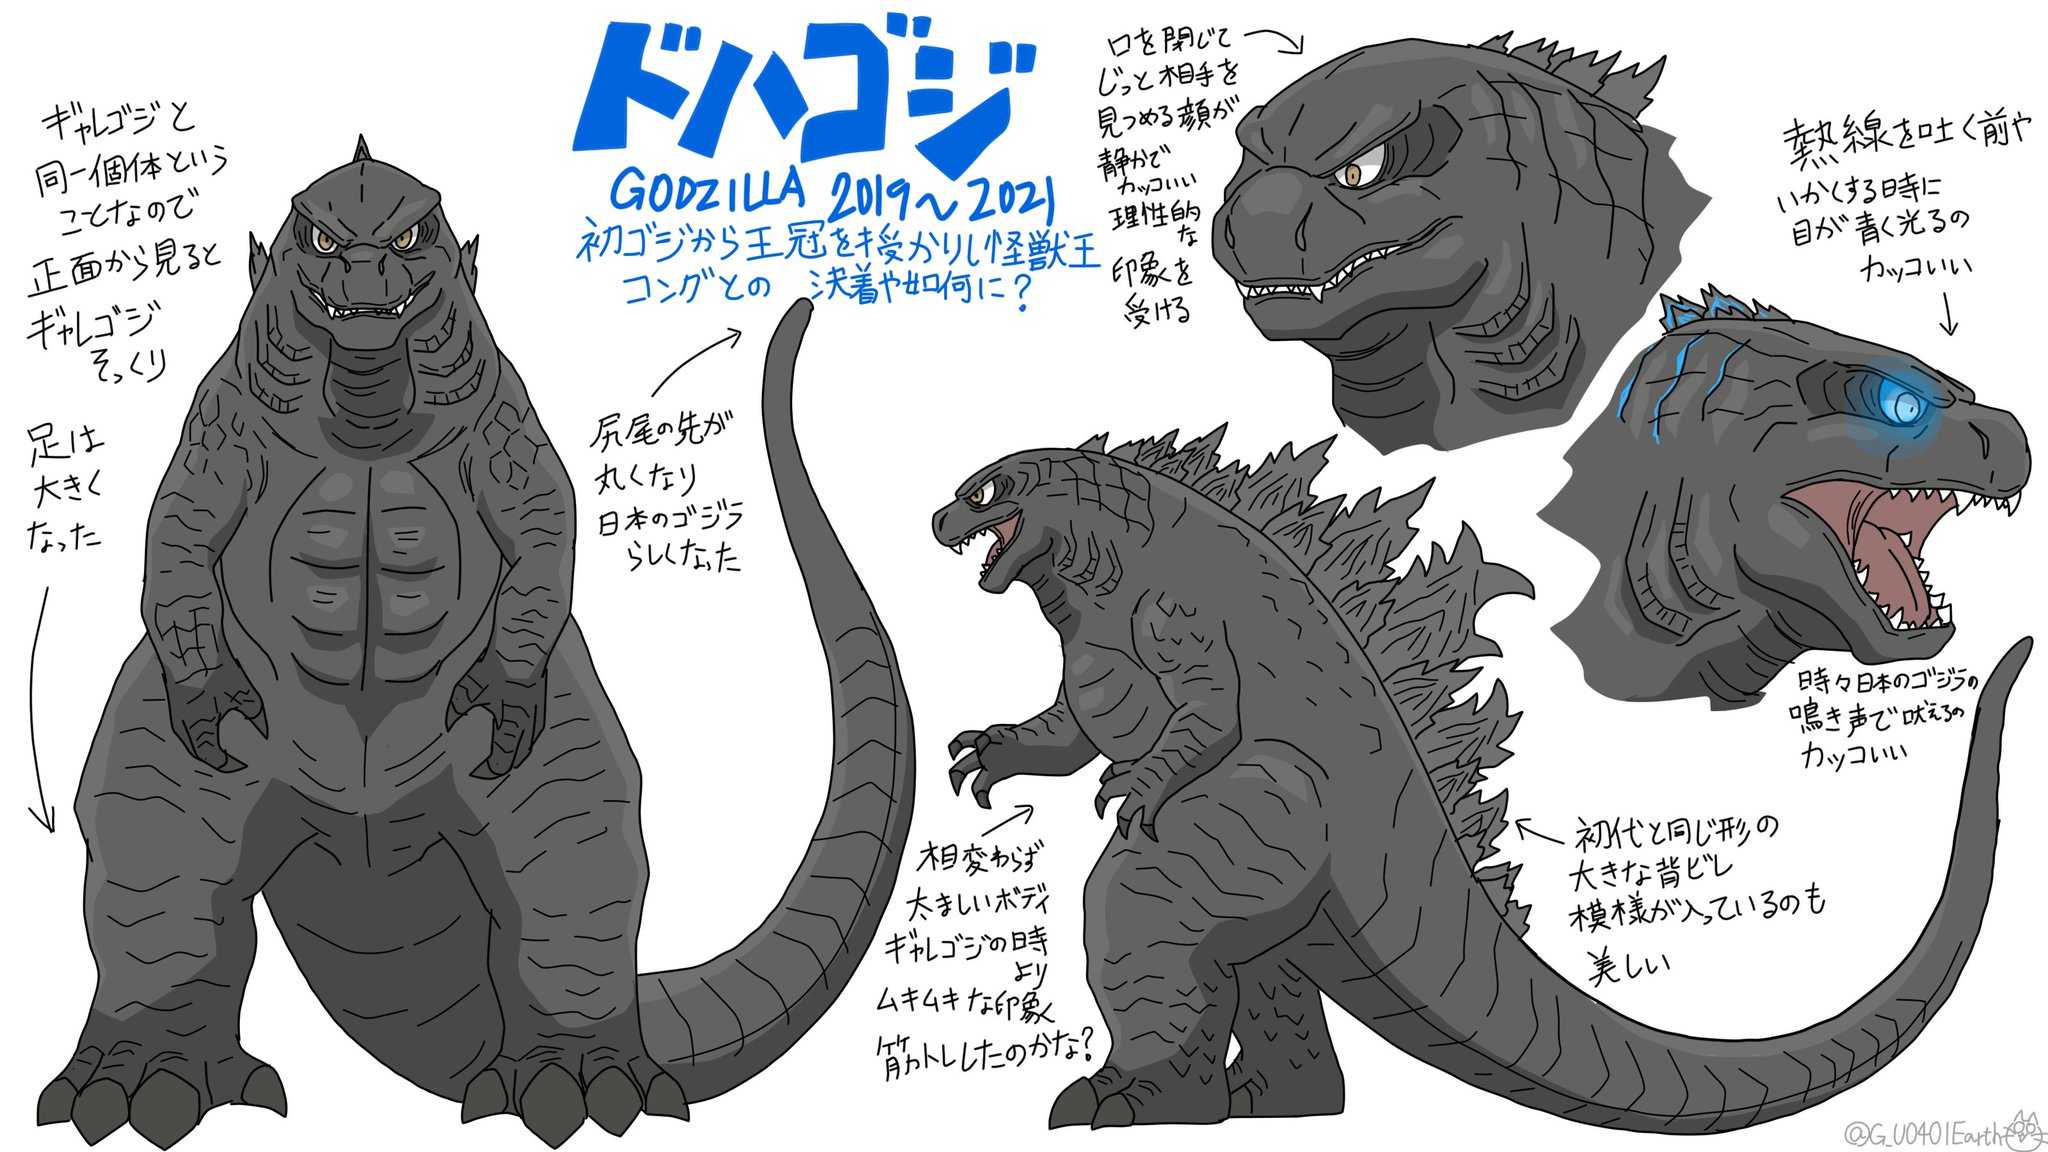 猫怪獣ノラ ドハゴジの デフォルメイラスト練習 ゴジラ Godzilla Godzillavskong T Co Zrfr0ybbsw Twitter